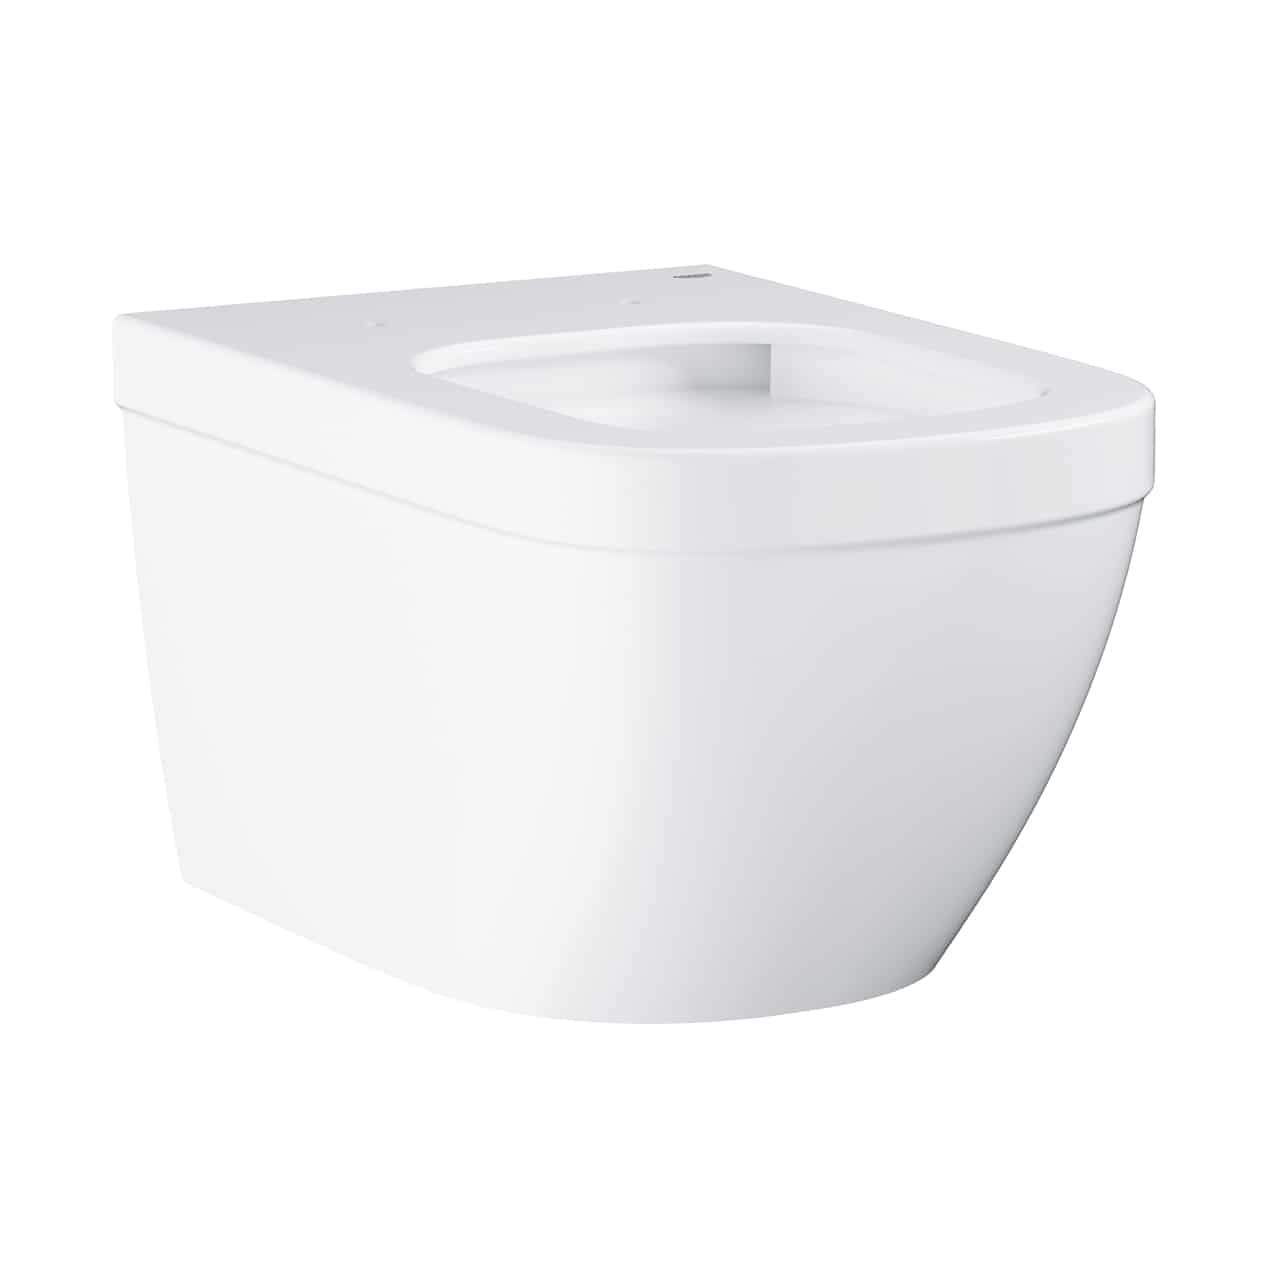 Vase wc - Vas wc suspendat Grohe Euro Ceramic Rimless TripleVortex 54x37 cm, alb, laguna.ro